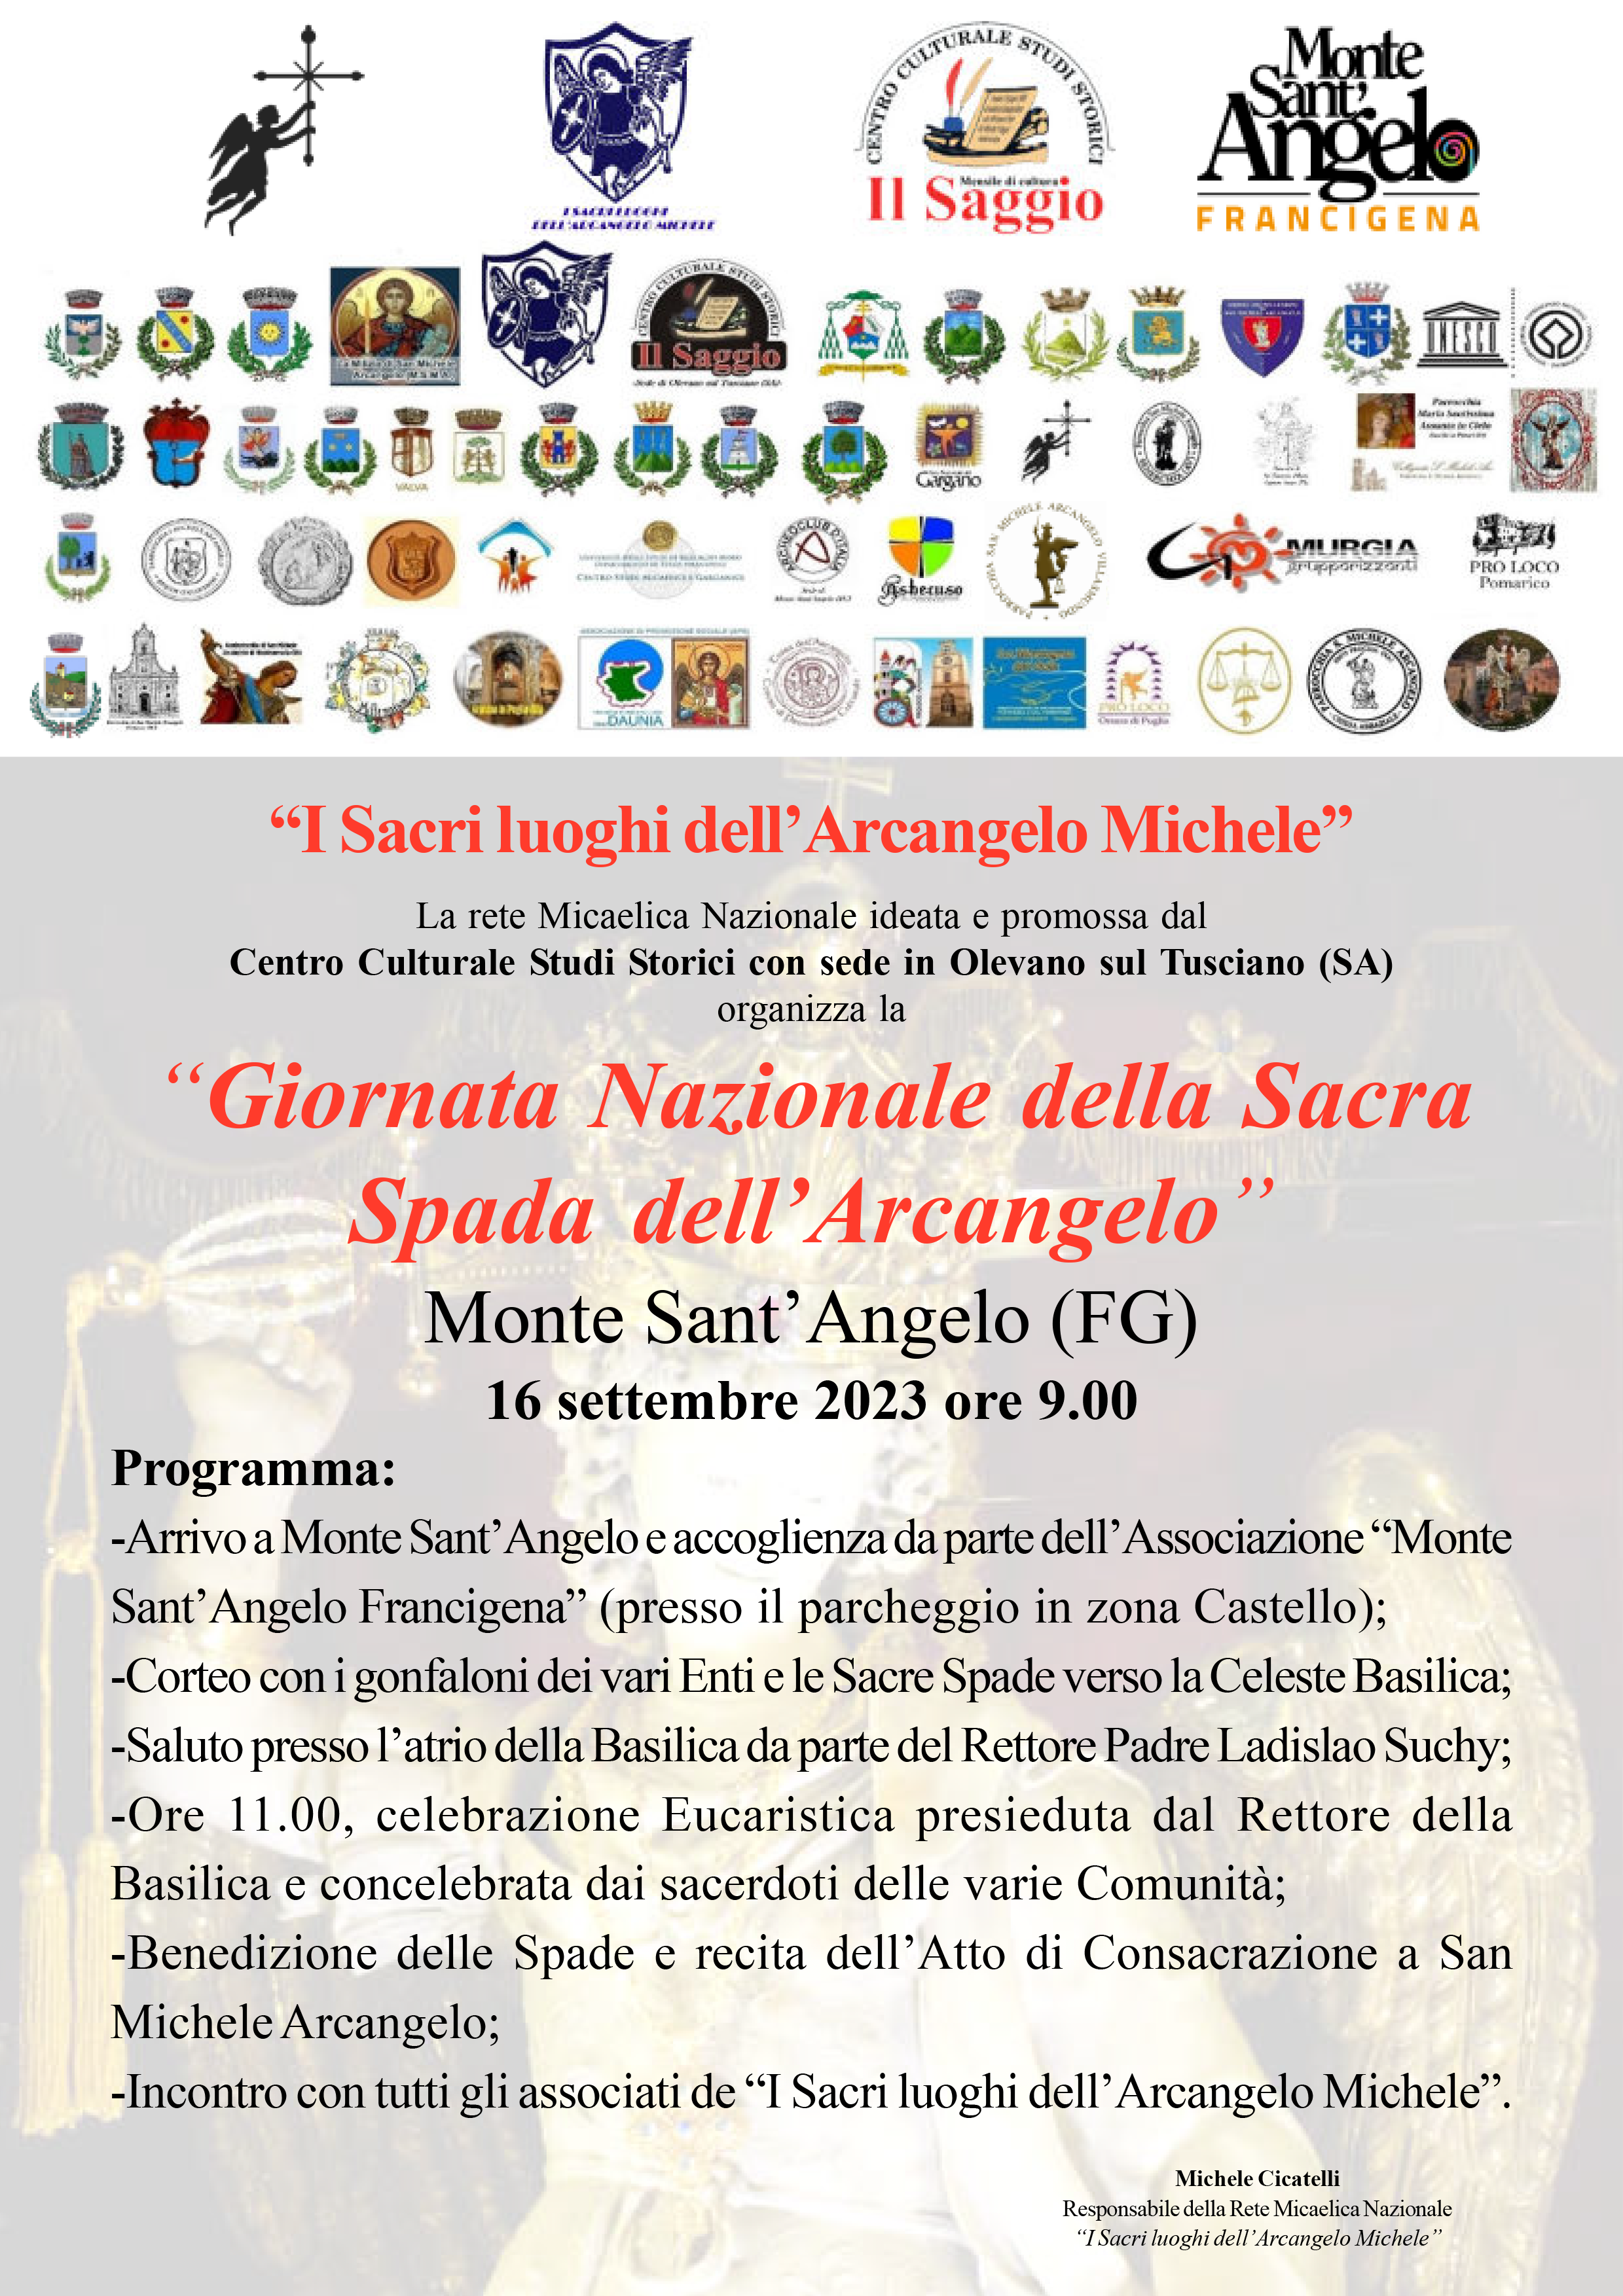 Monte Sant’Angelo: “Giornata Nazionale della Sacra Spada dell’Arcangelo”